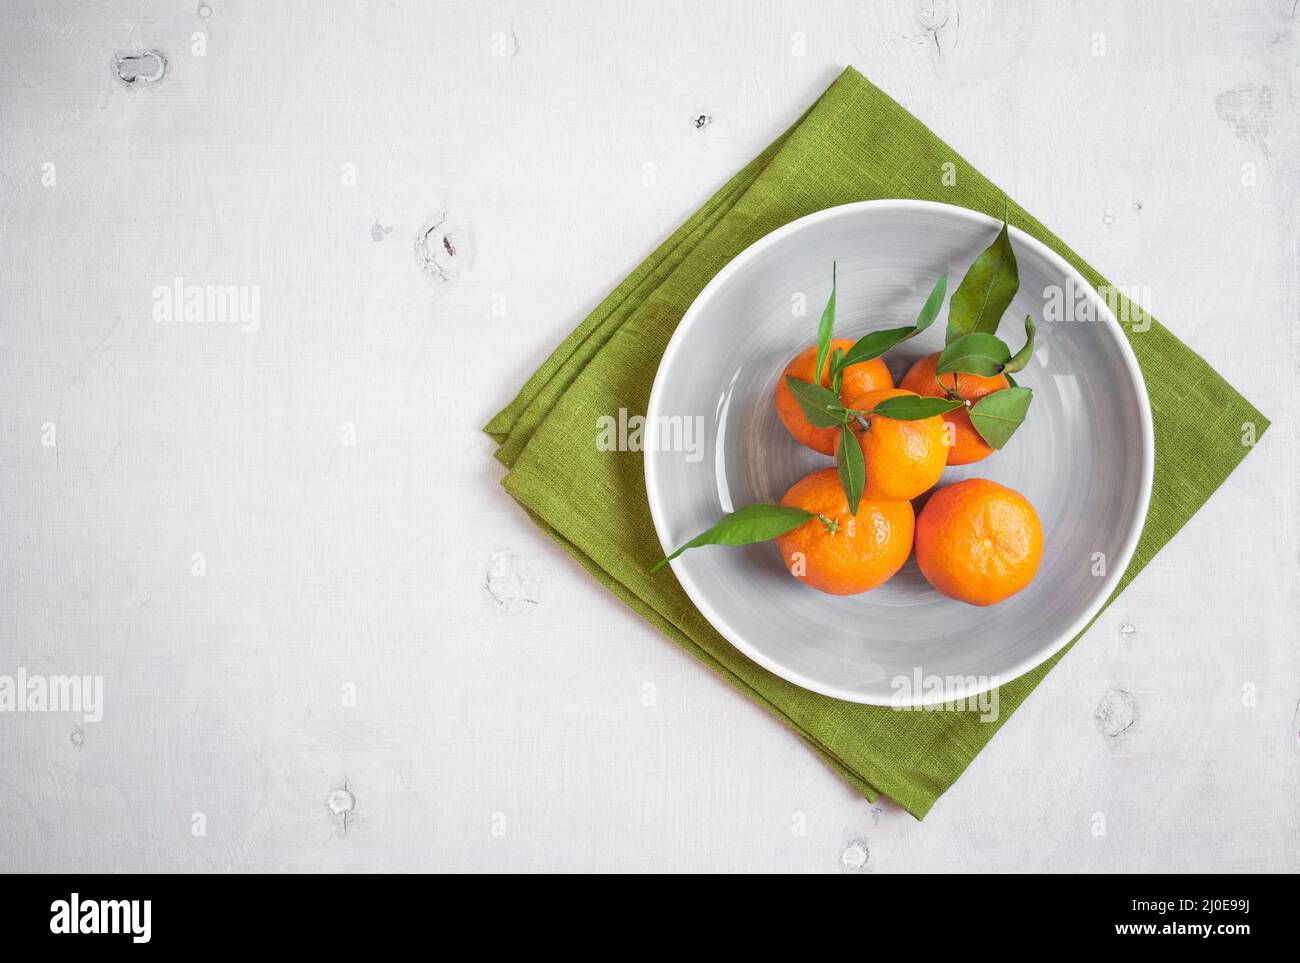 Les tangerines on white background. Espace libre pour le texte Banque D'Images